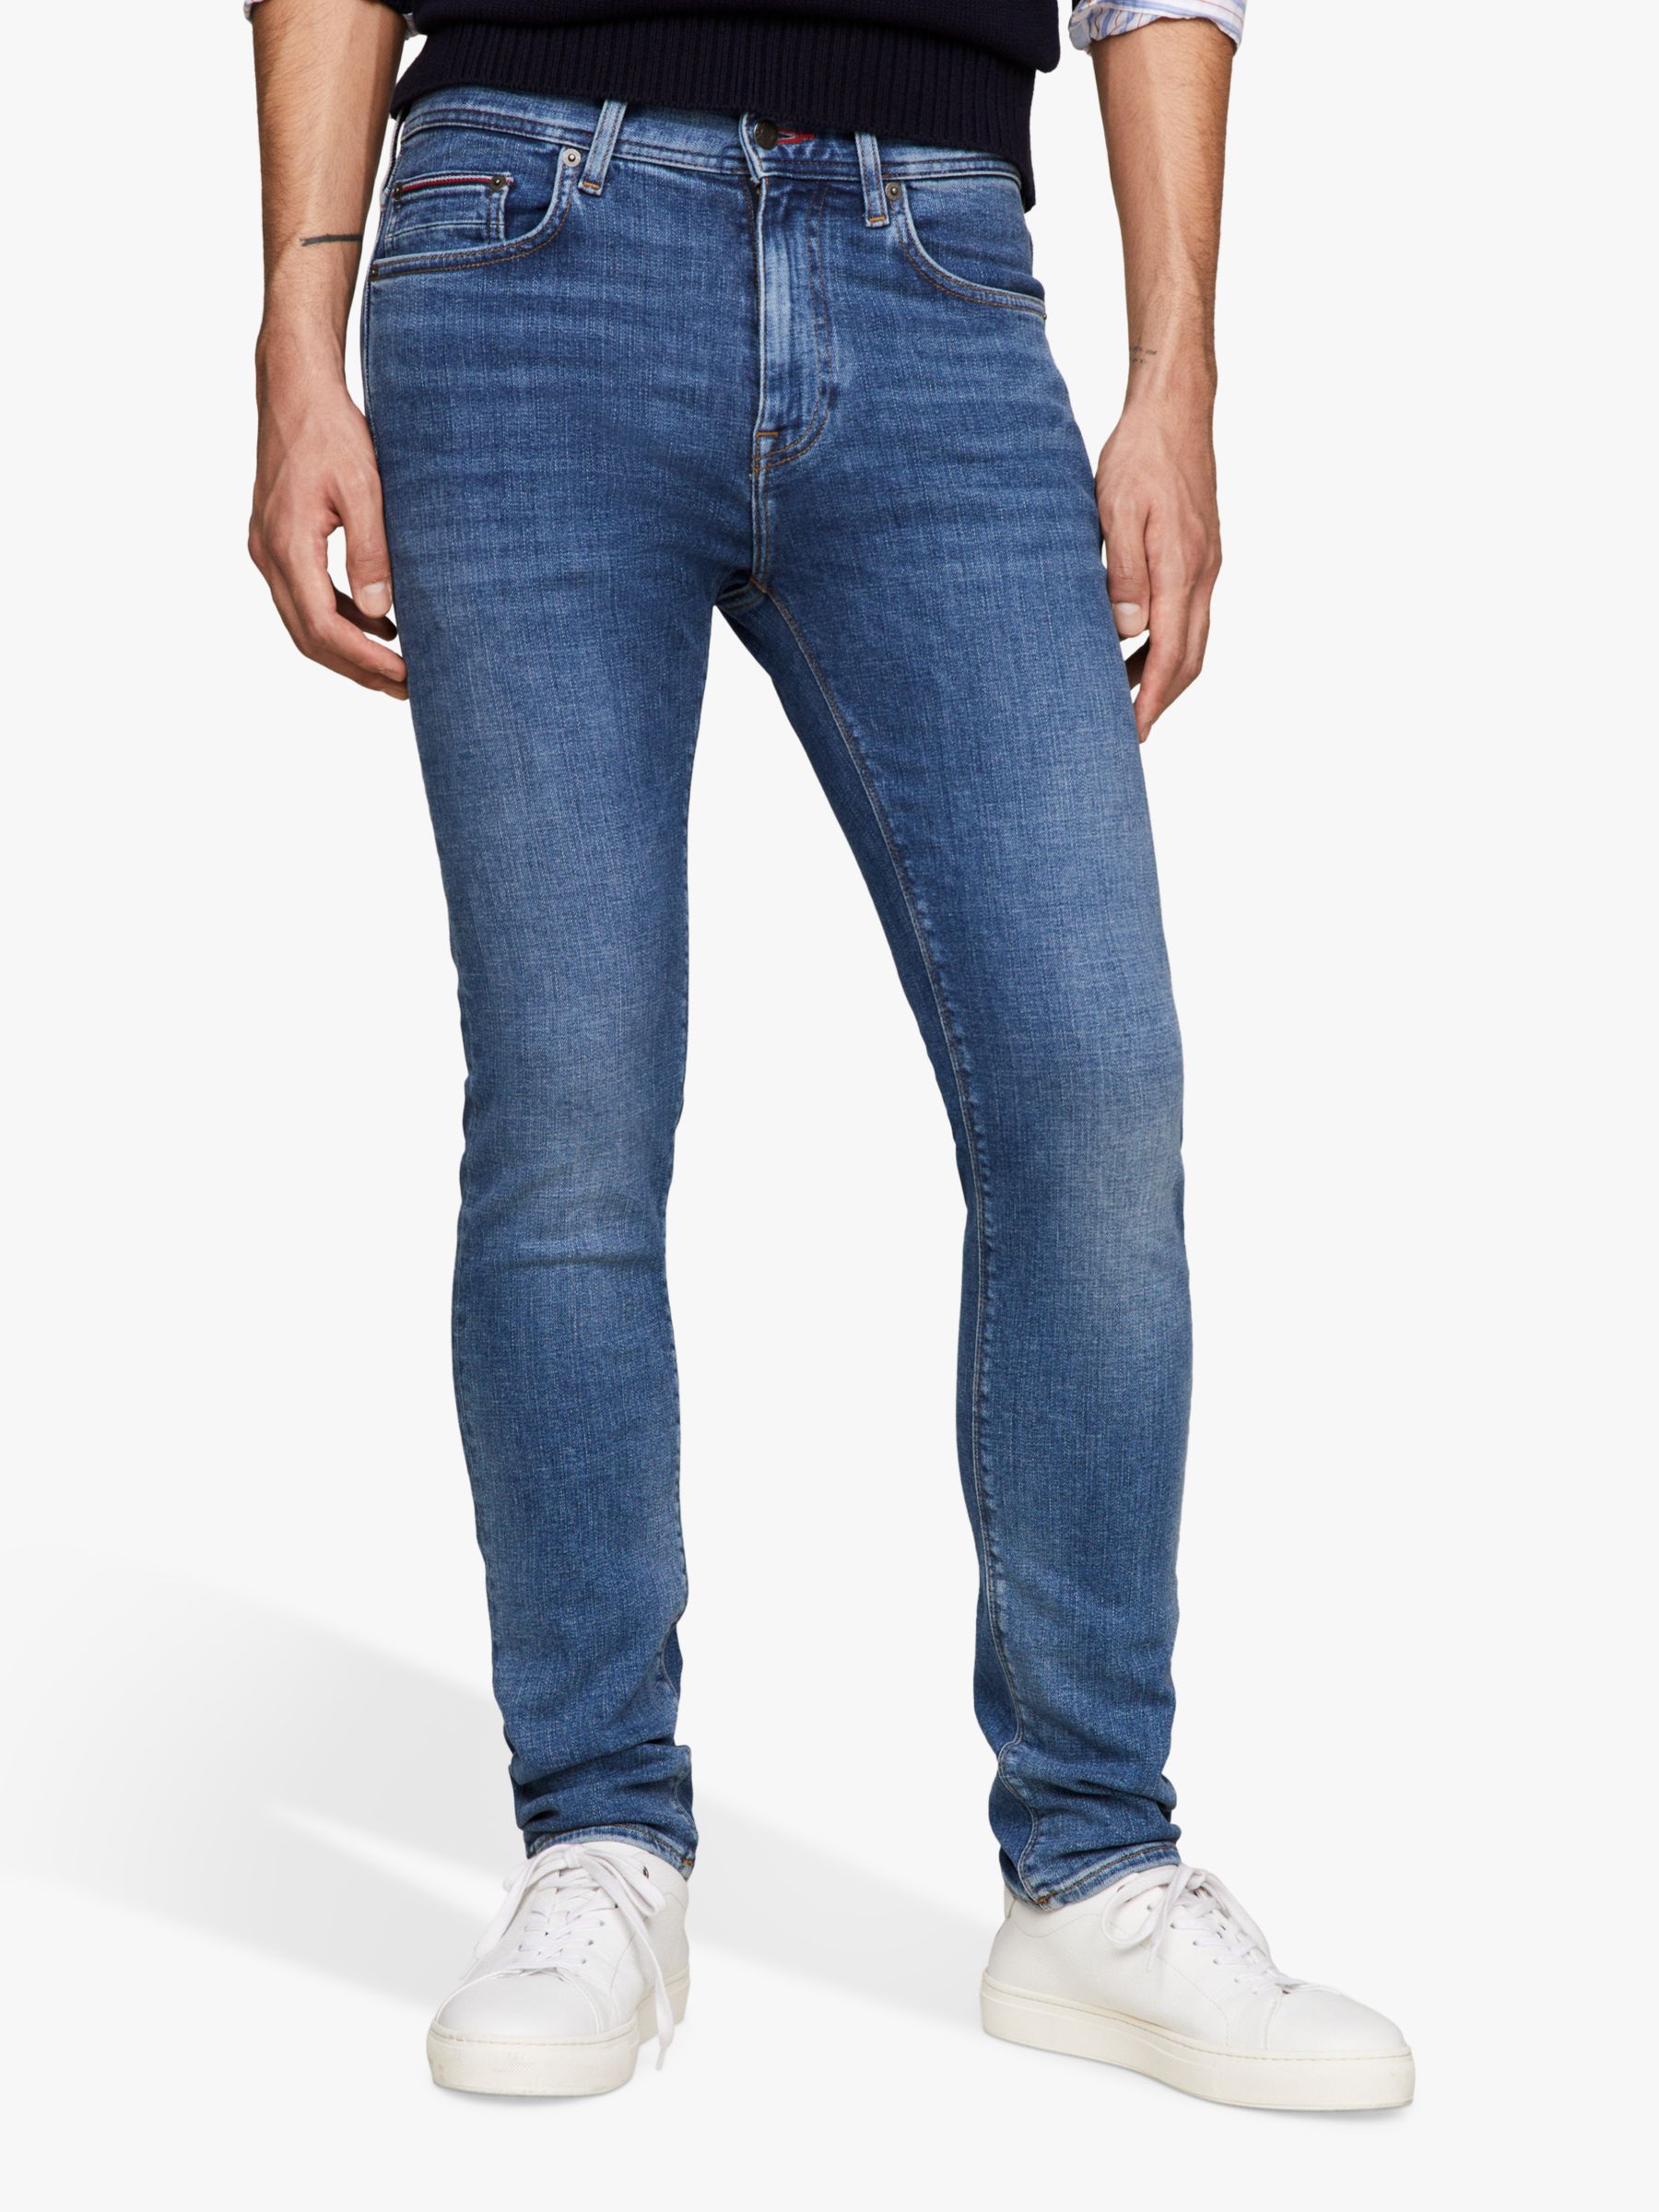 Buy Tommy Hilfiger Beecker Slim Fit Jeans, Blue Online at johnlewis.com